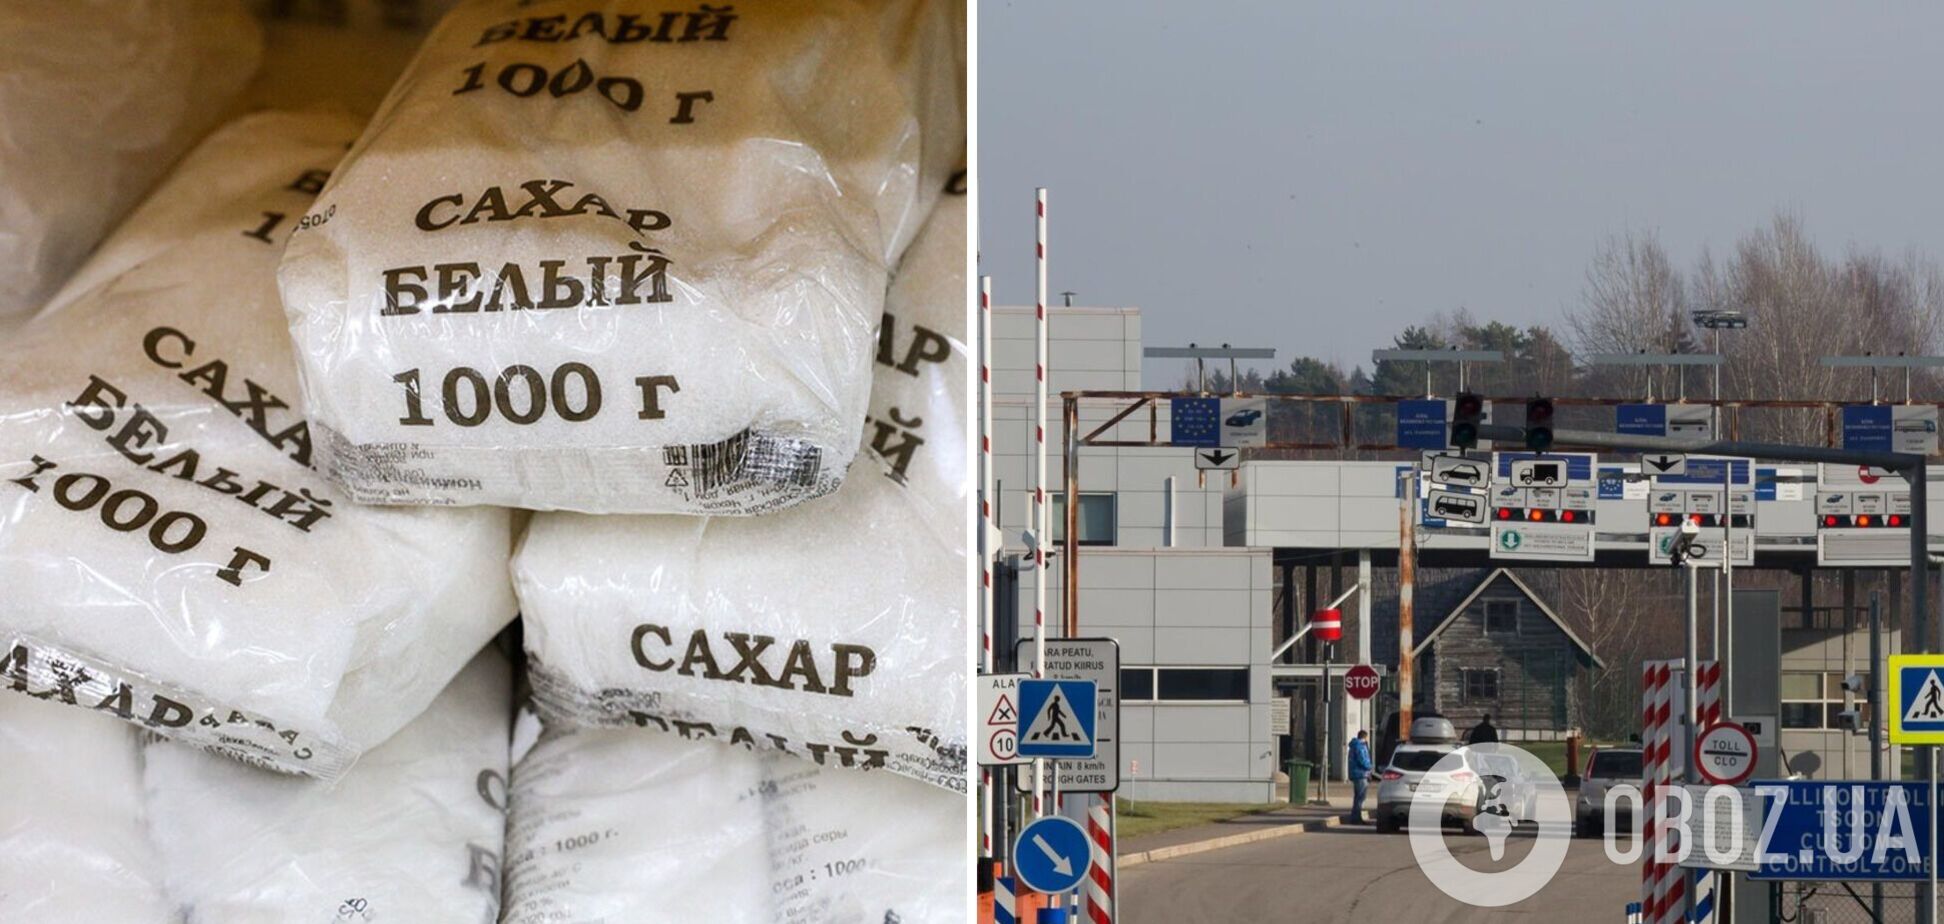 Сахар через границу РФ нельзя вывозить даже физлицам